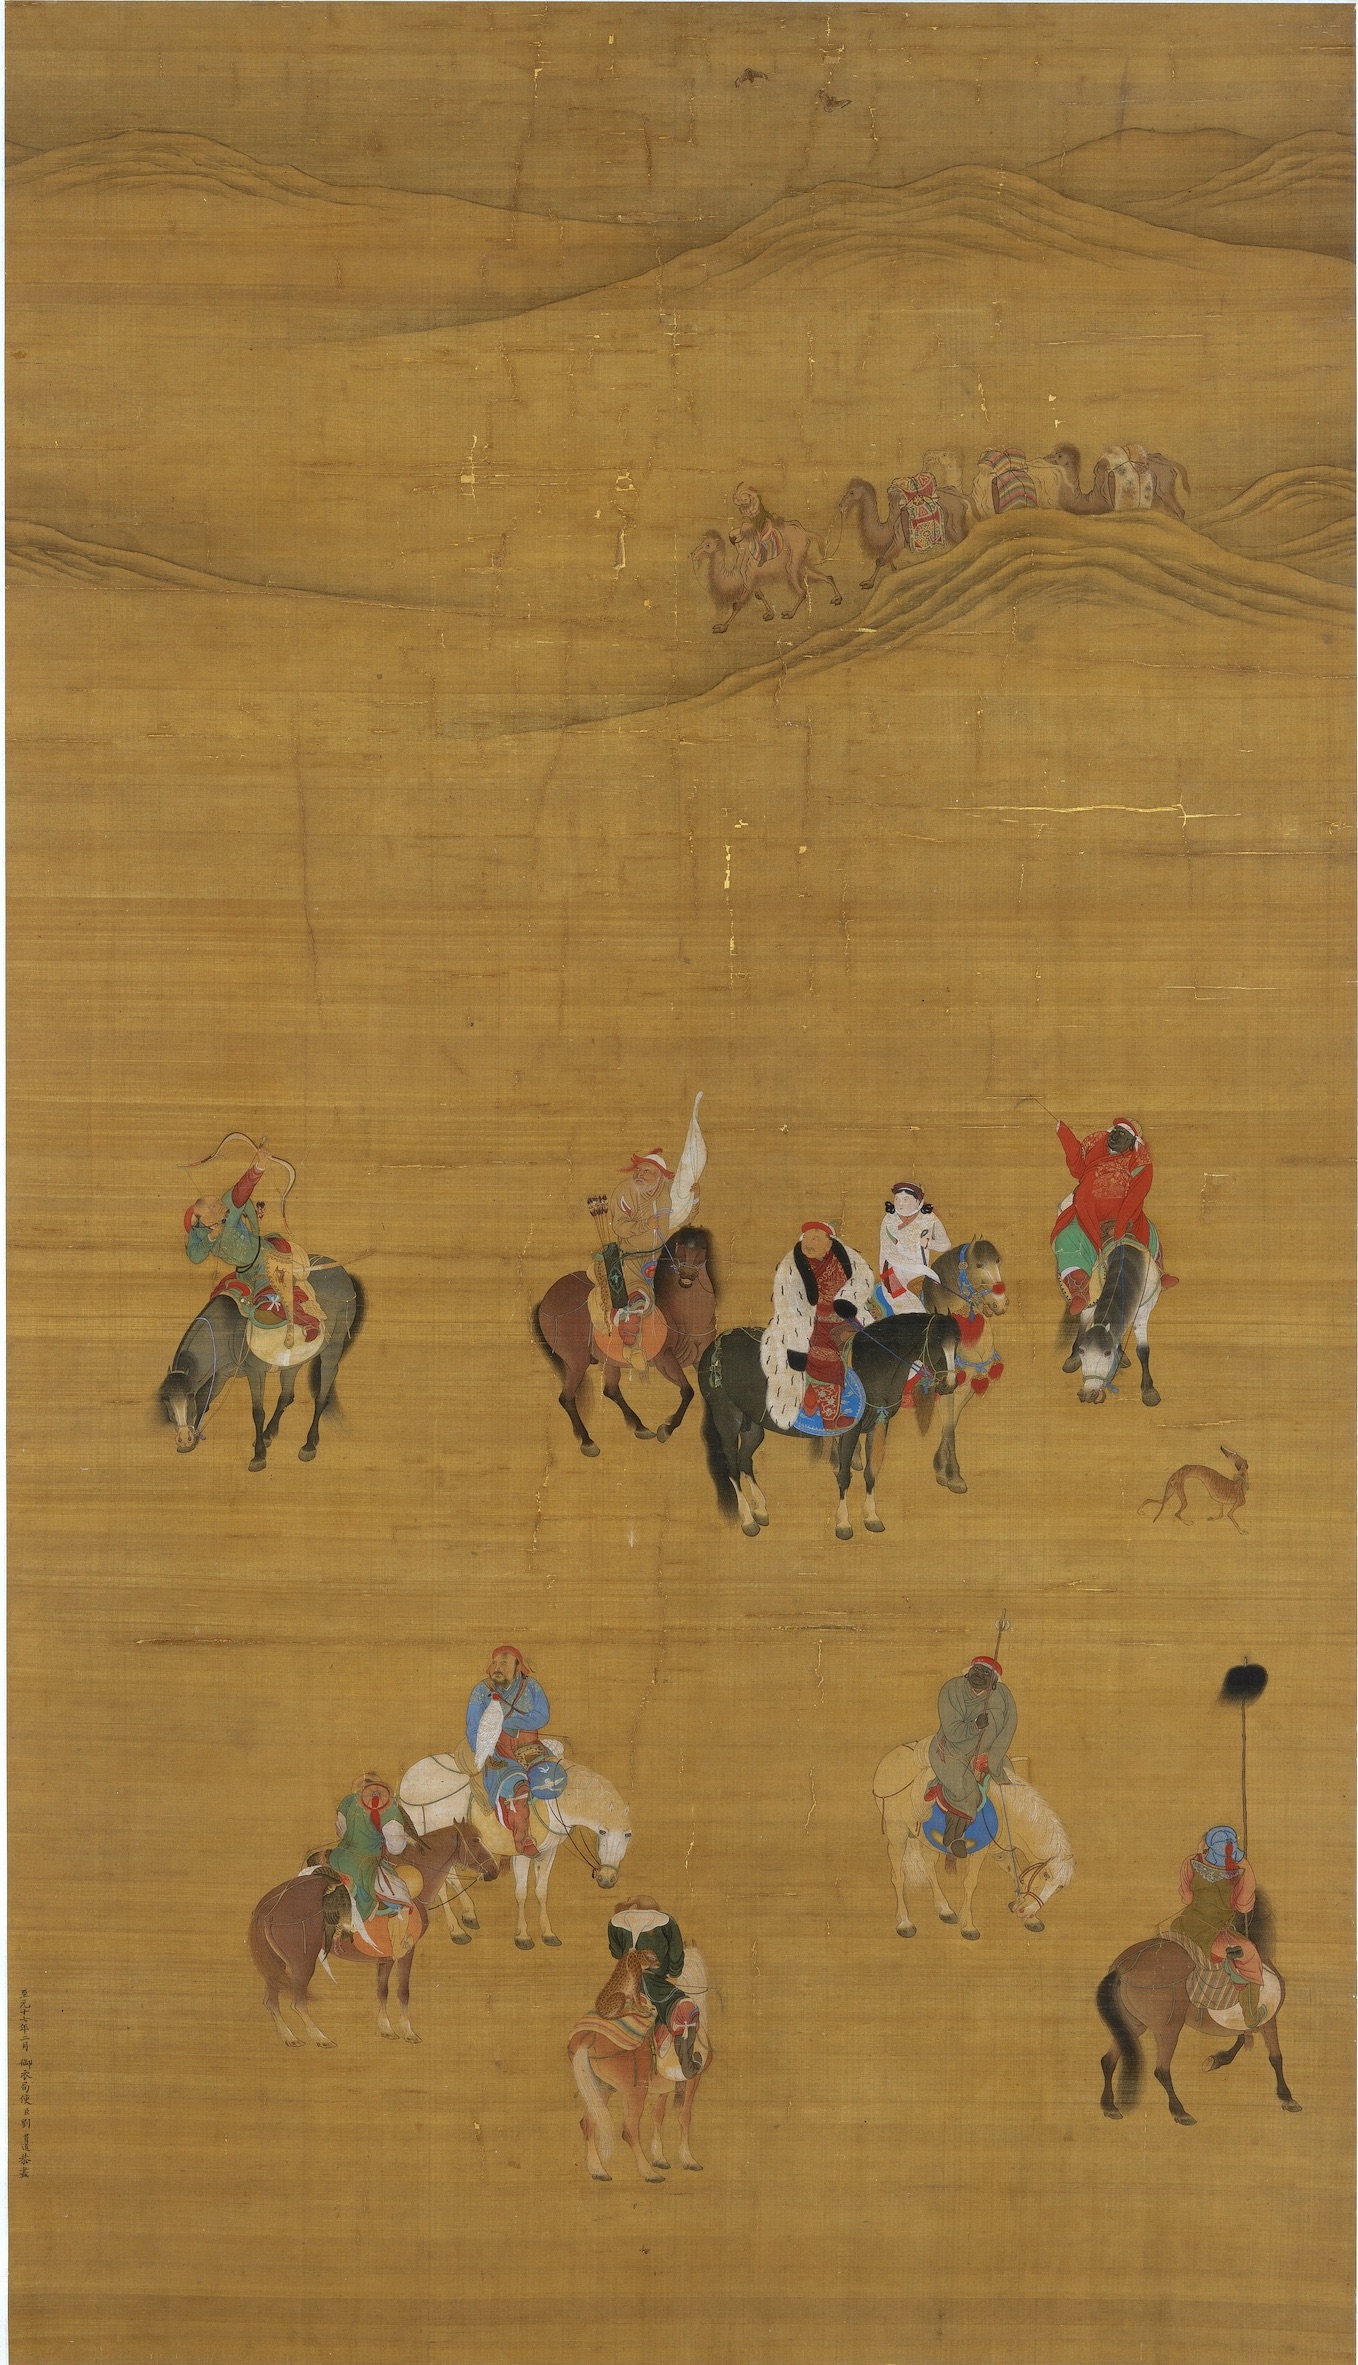 Le petit-fils de Gengis Khan, Kubilaï Khaan, chasse avec son épouse et sa garde rapprochée, très cosmopolite. Copie d’après une peinture sur soie de Liu Guandao, 1280. Taiwan, musée du Palais, Taipei. Photo service de presse.